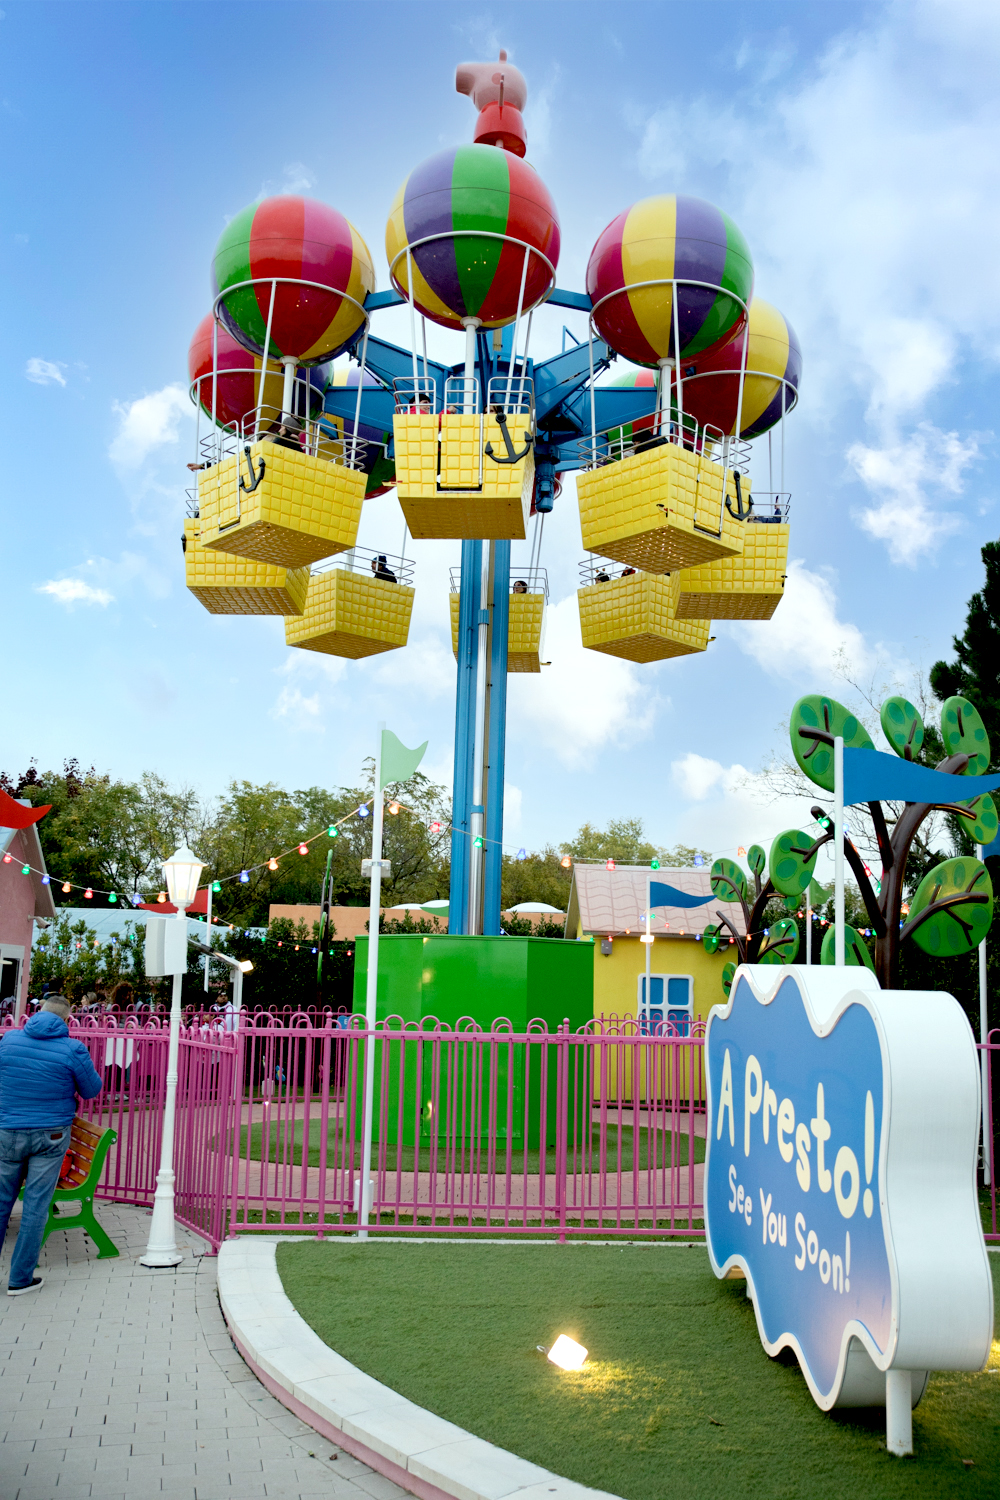 Gardaland Park - Peppa Pig Land - Peppa Pig's Air Baloon